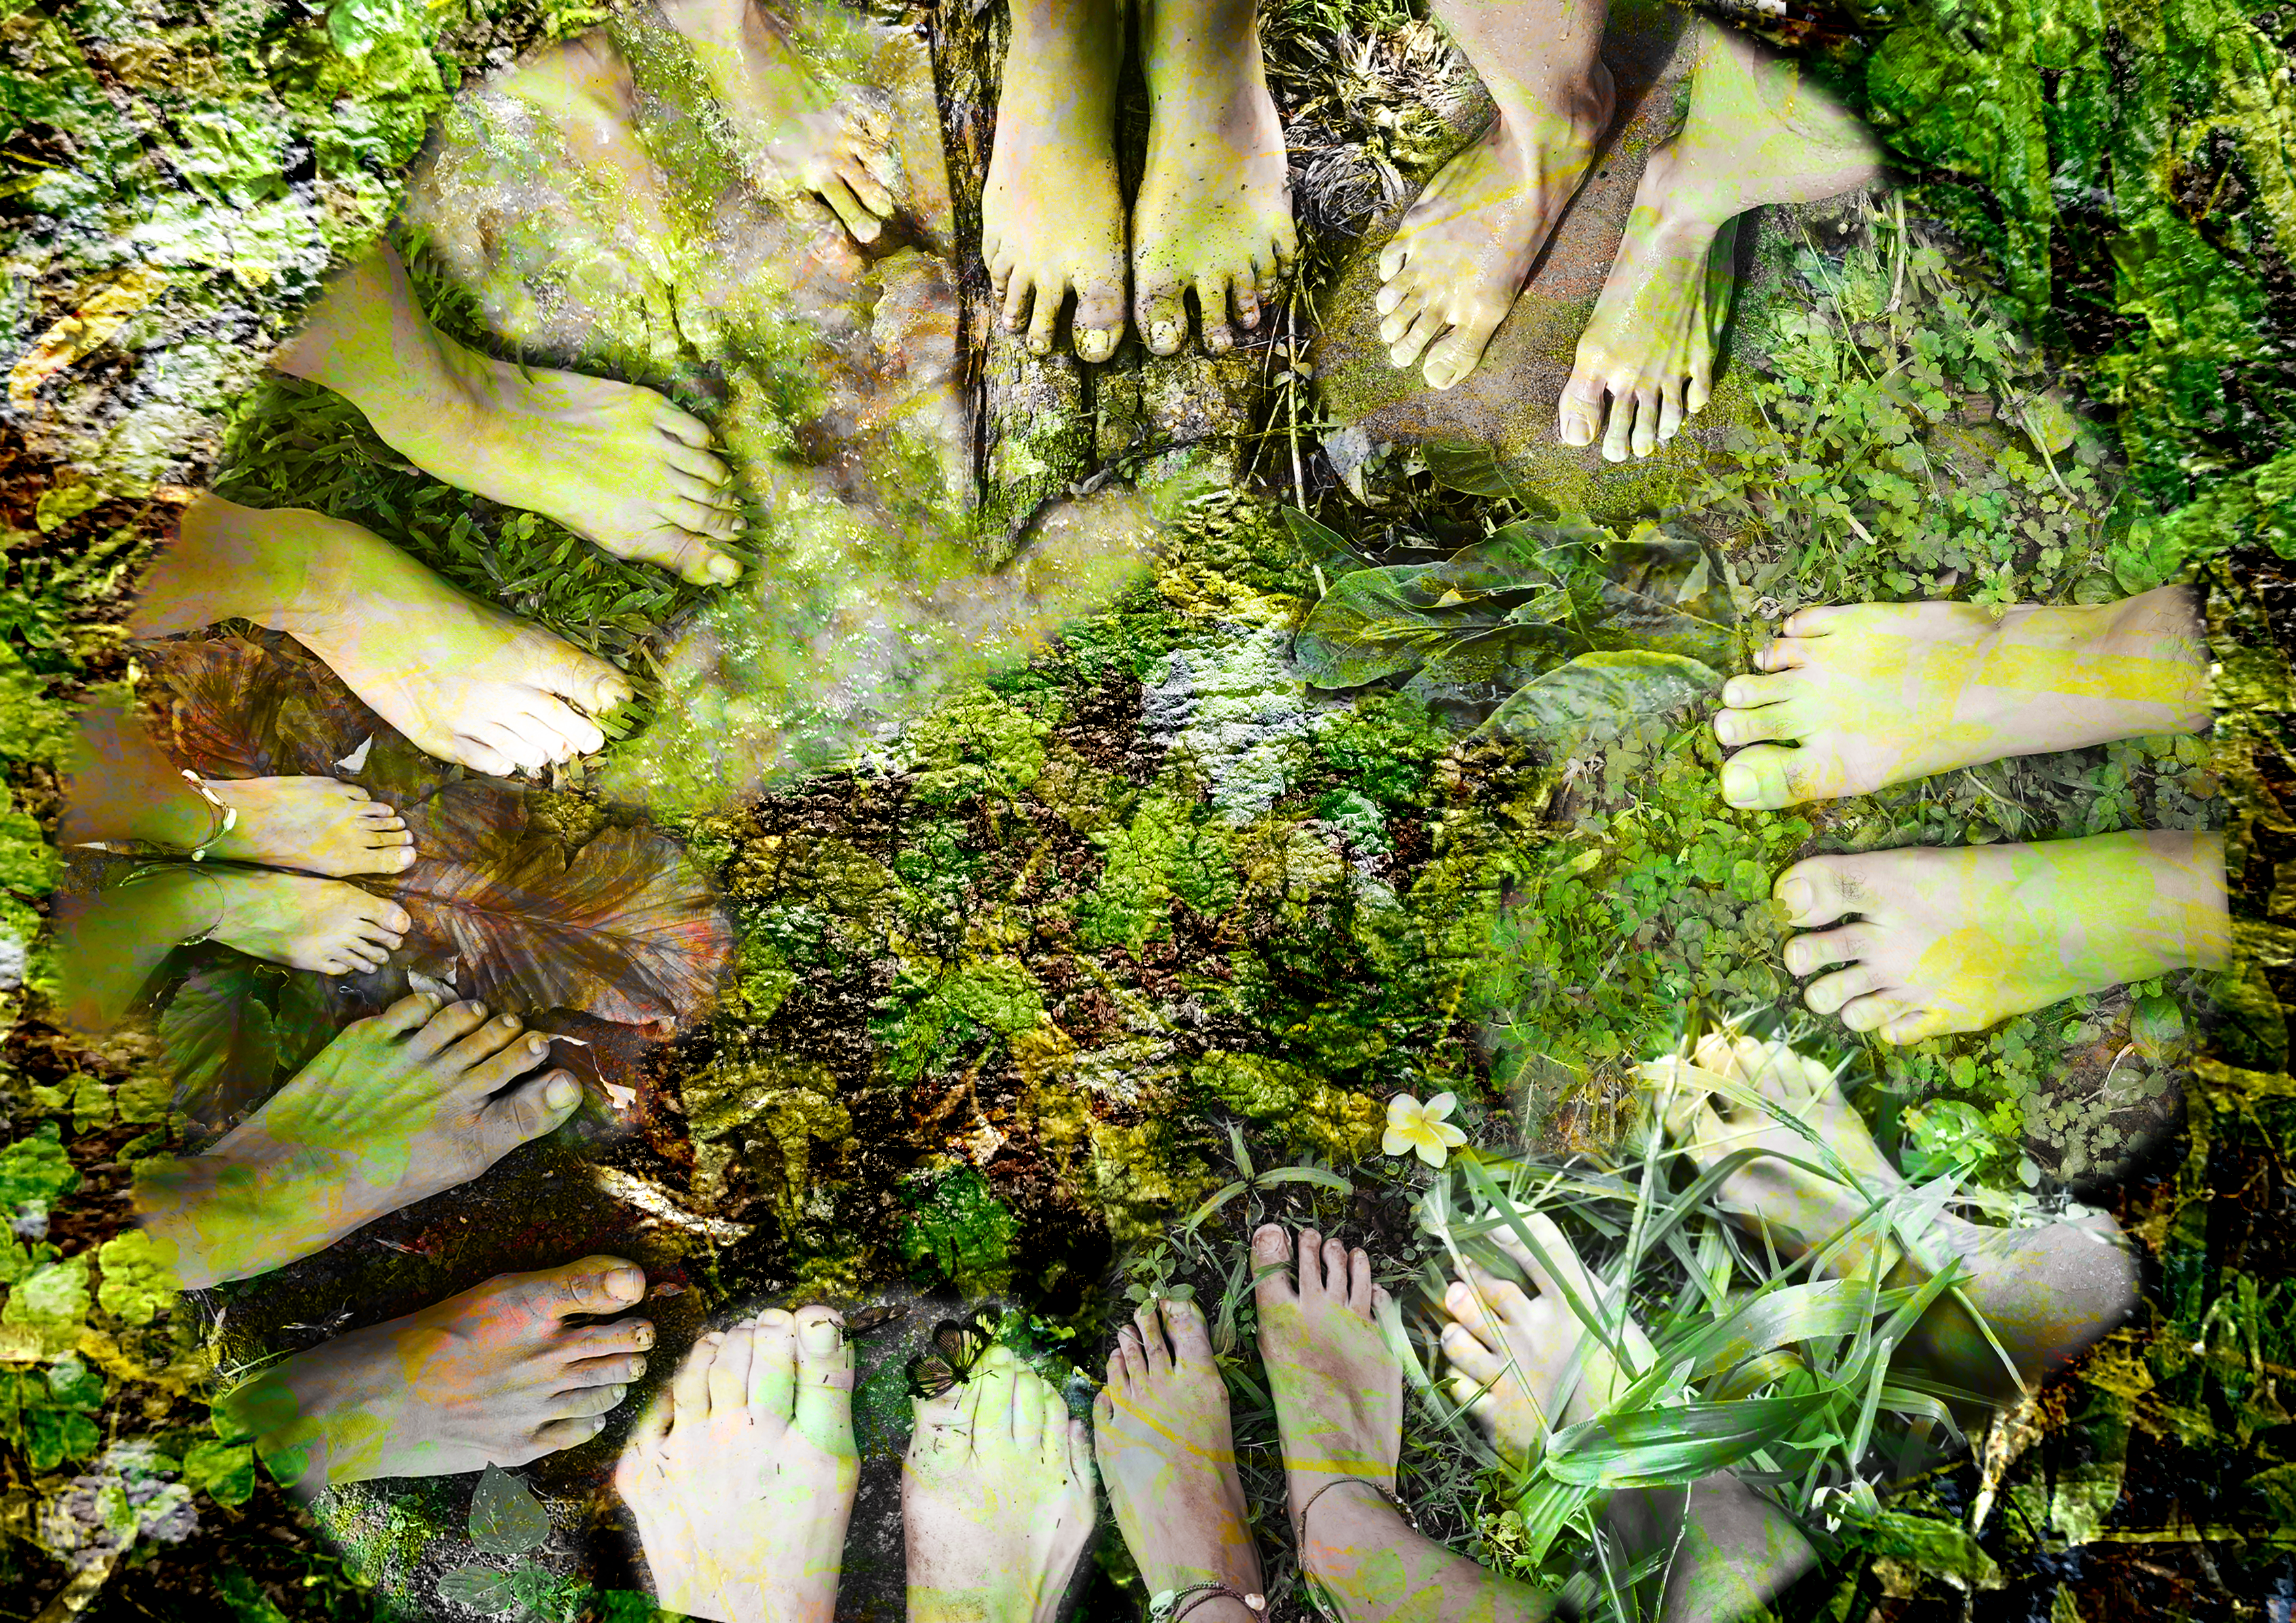 Imagem colorida com sobreposição de duas imagens: a primeira, um círculo formado por pares de pés humanos; a segunda, musgos e folhas diversas